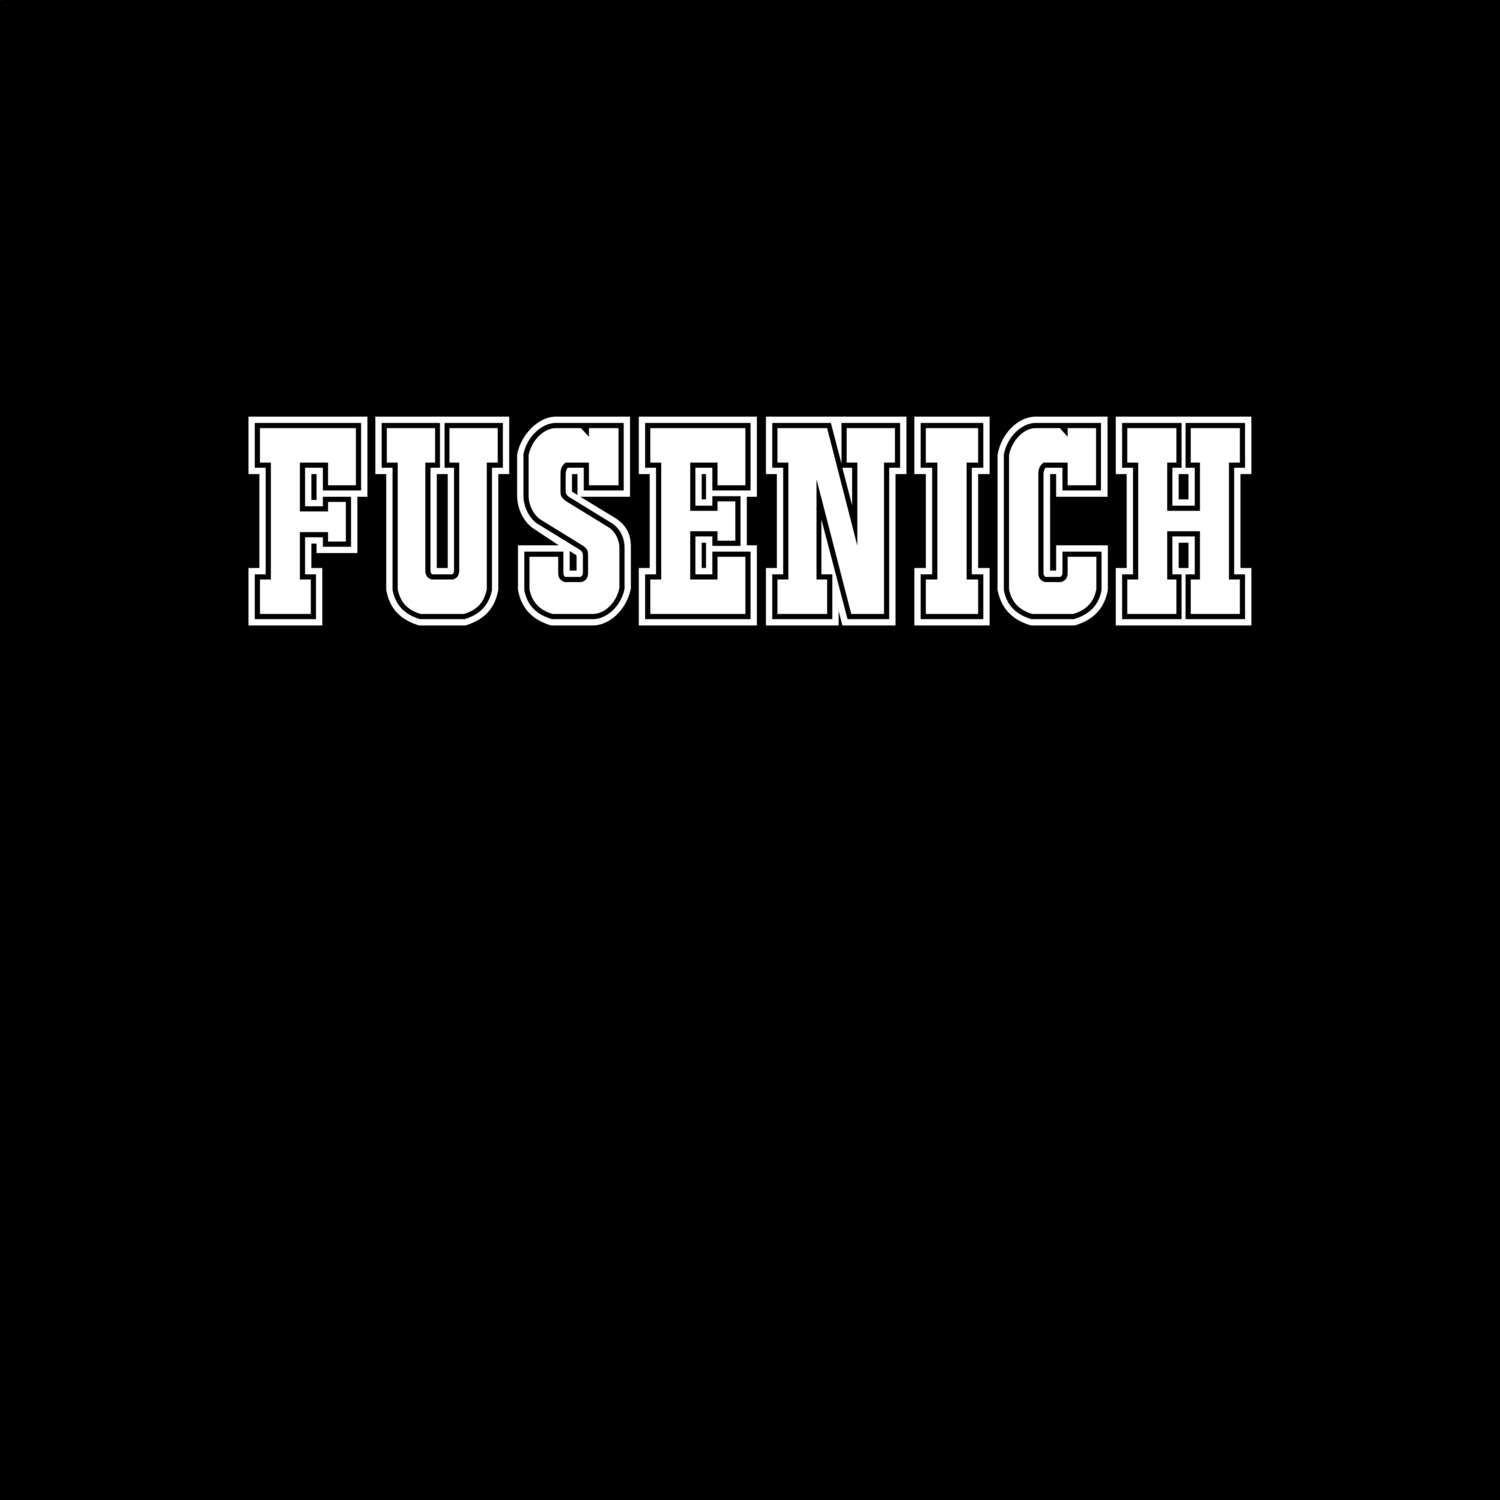 Fusenich T-Shirt »Classic«